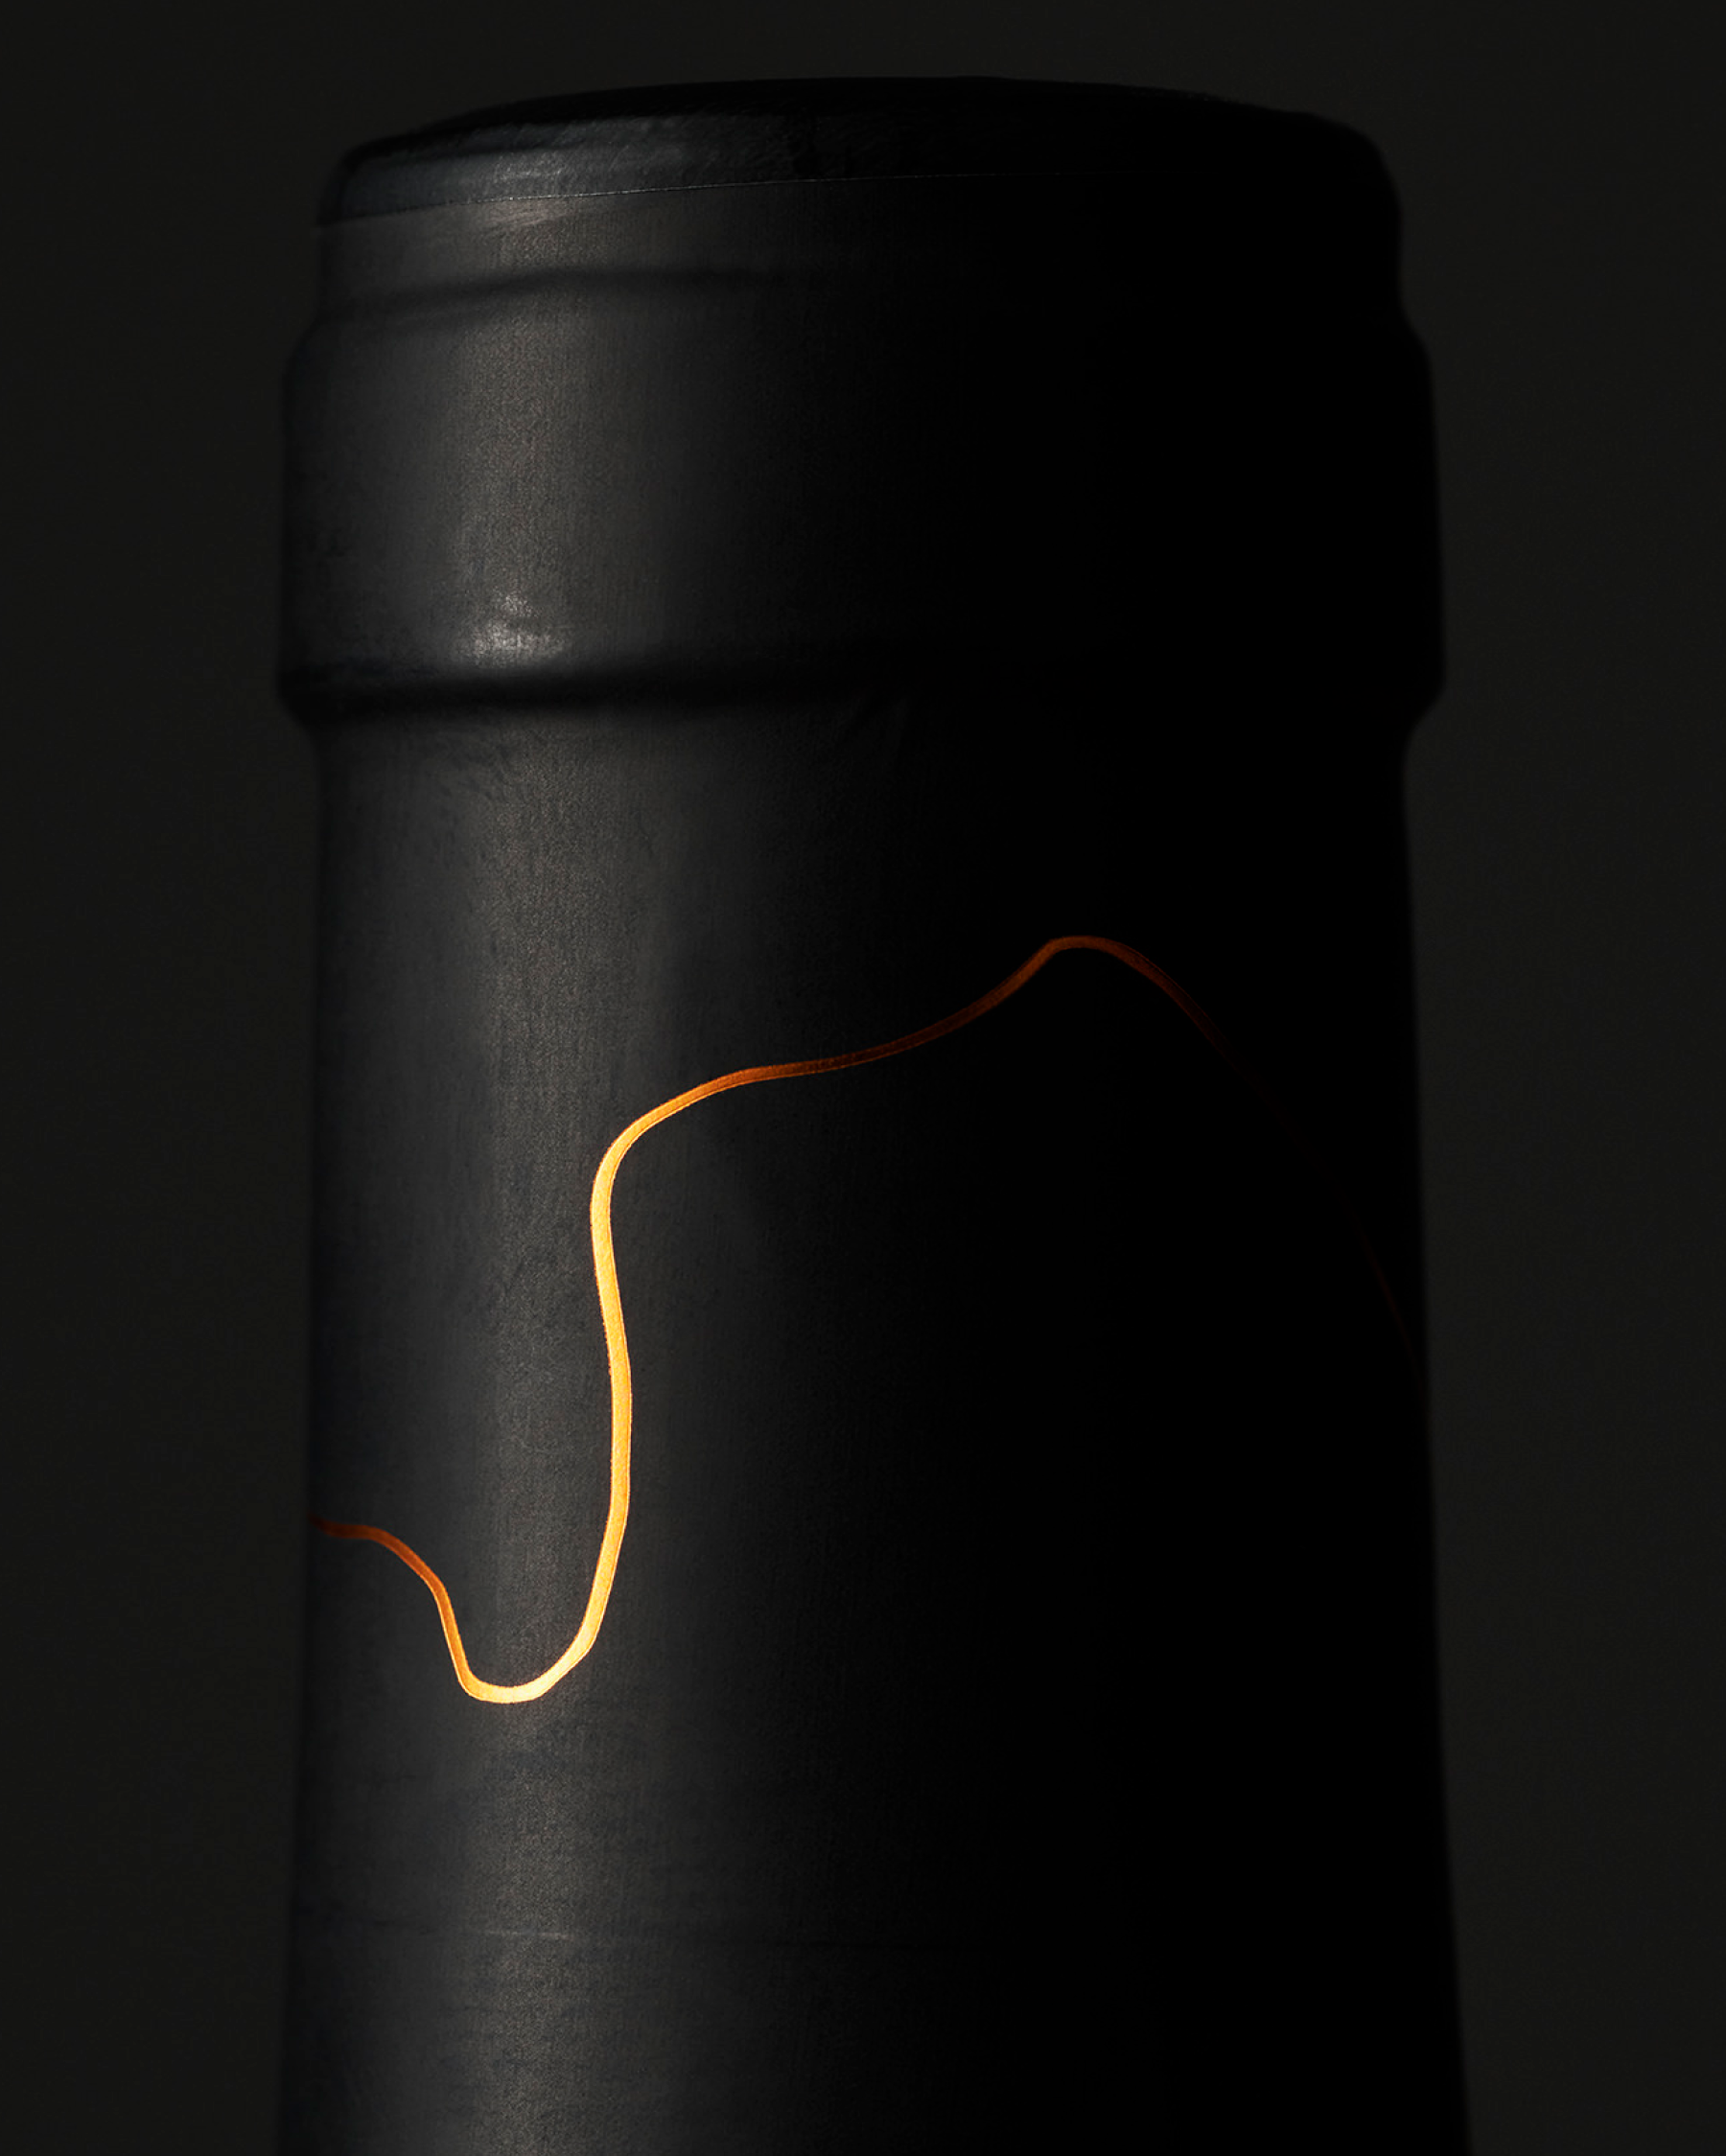 Label design for Château Pesquié single vinyard